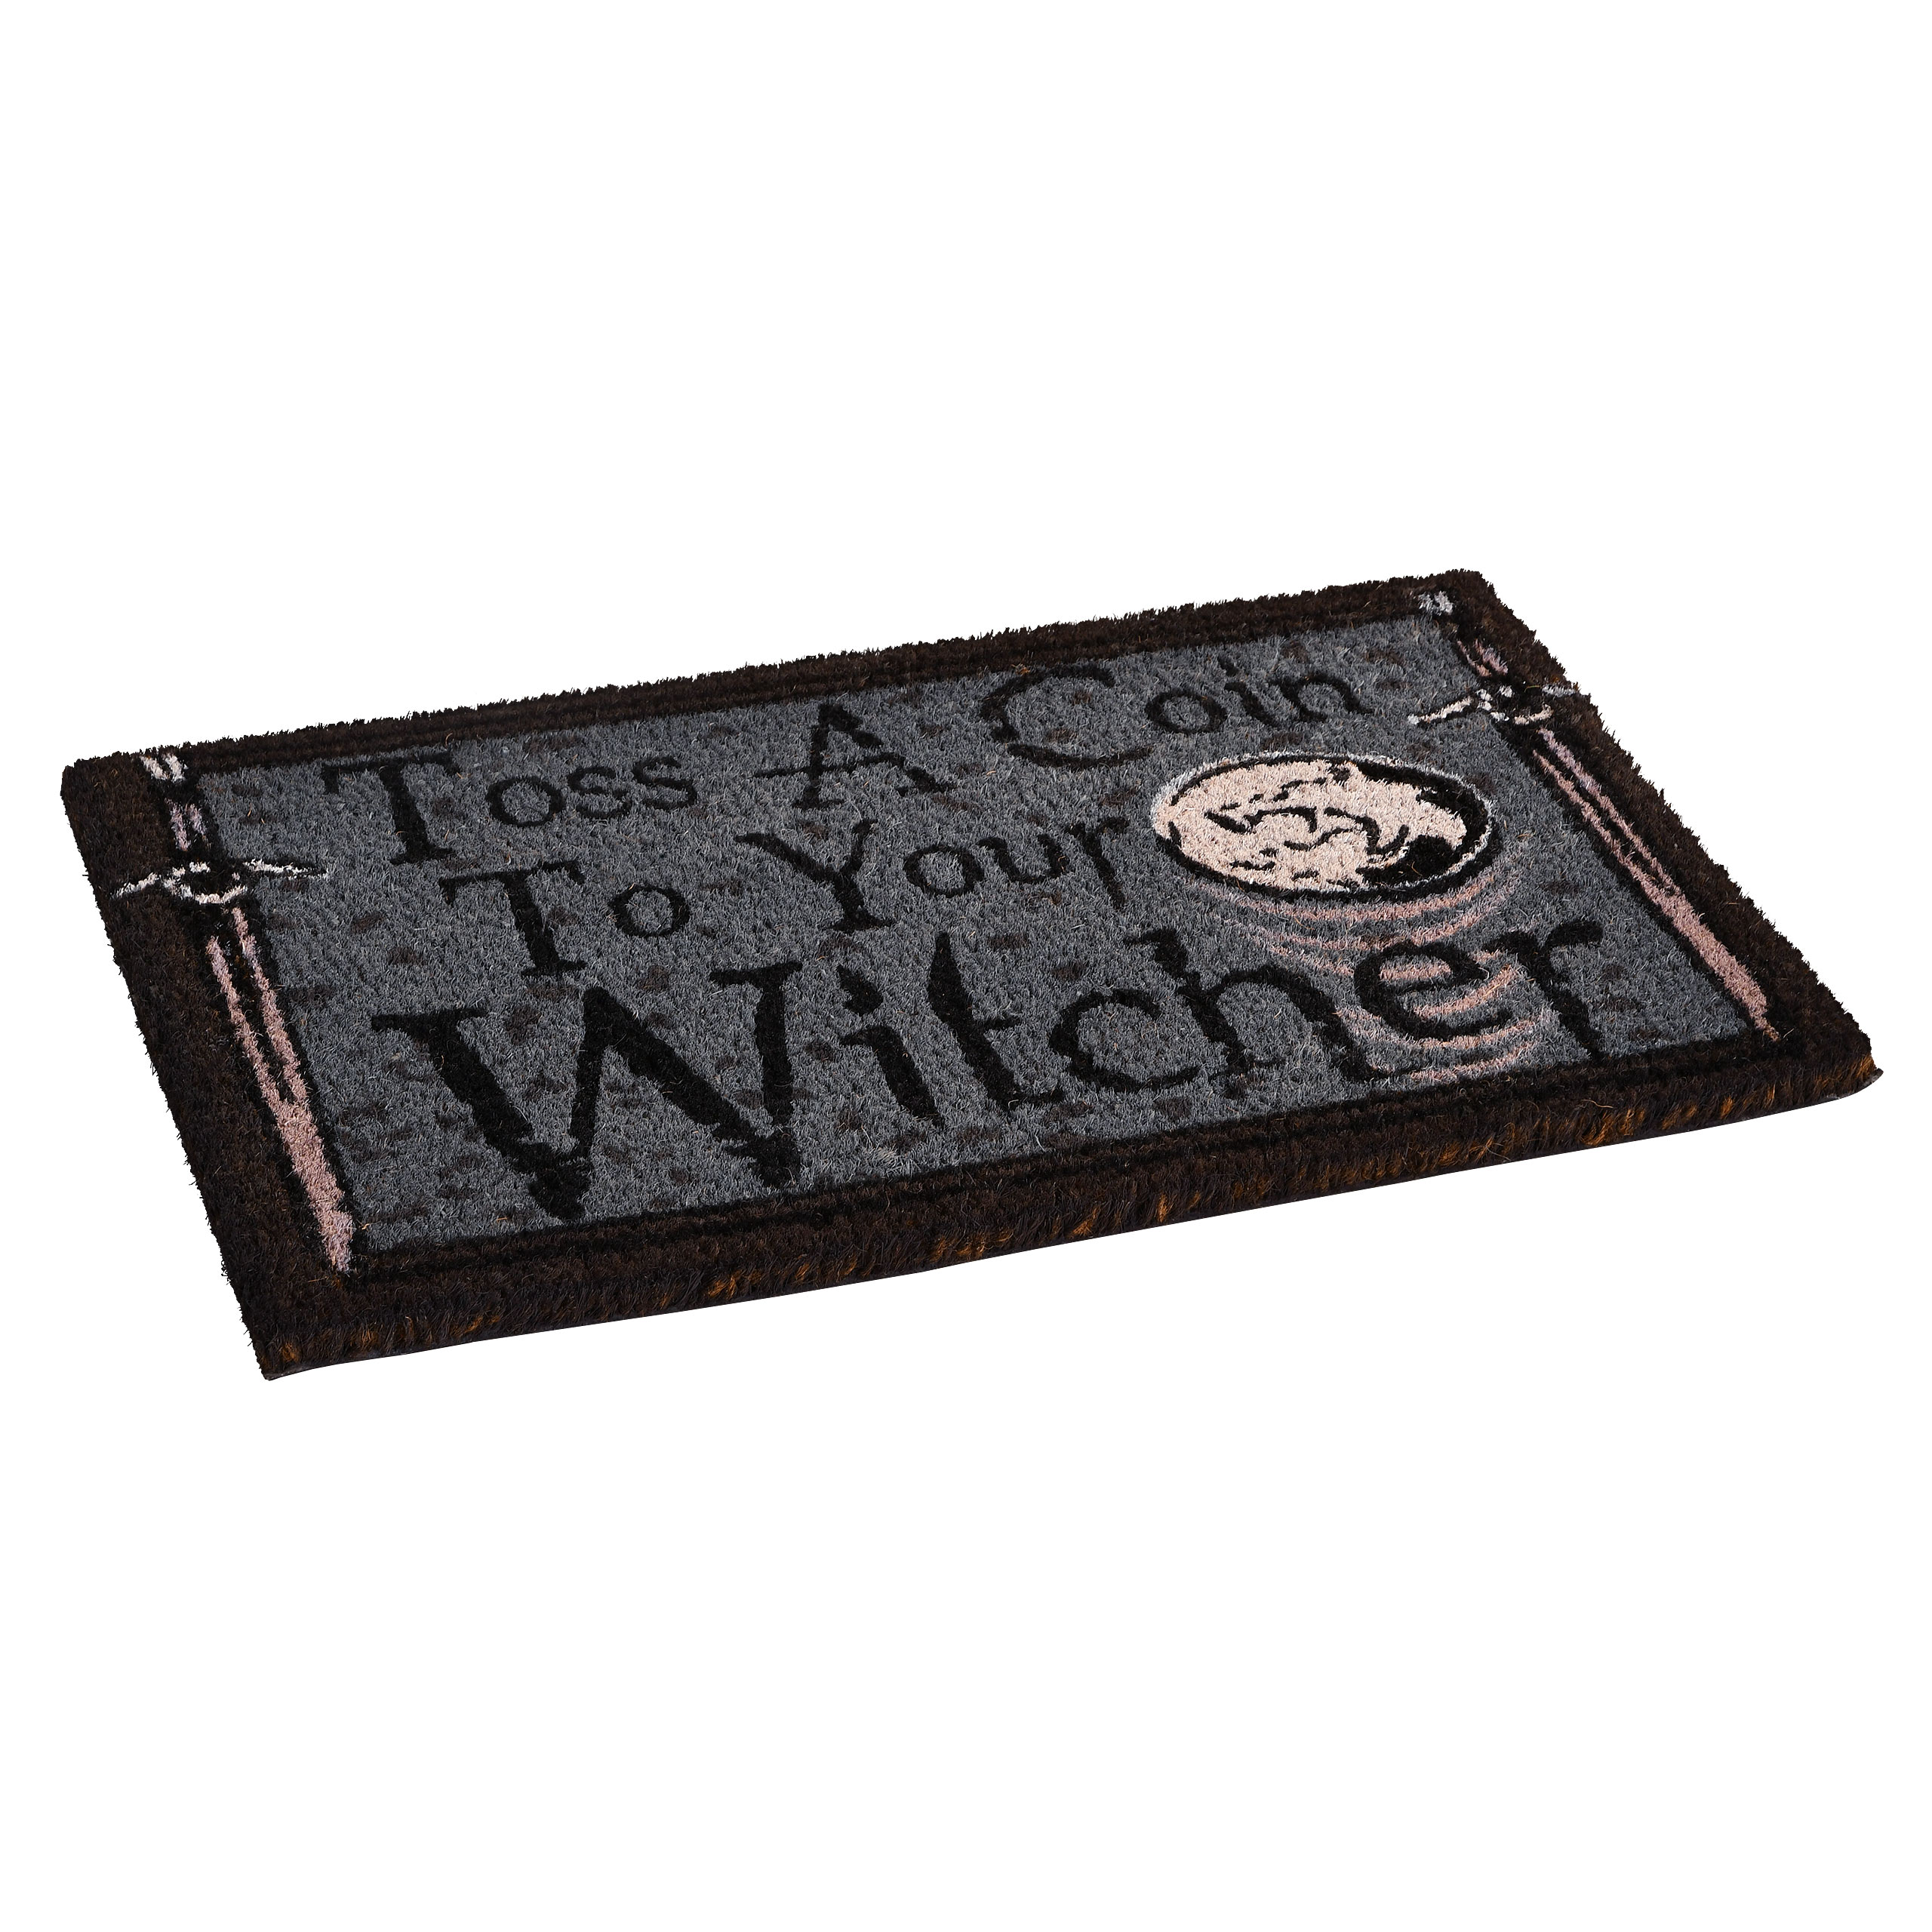 Witcher - Toss a Coin Doormat